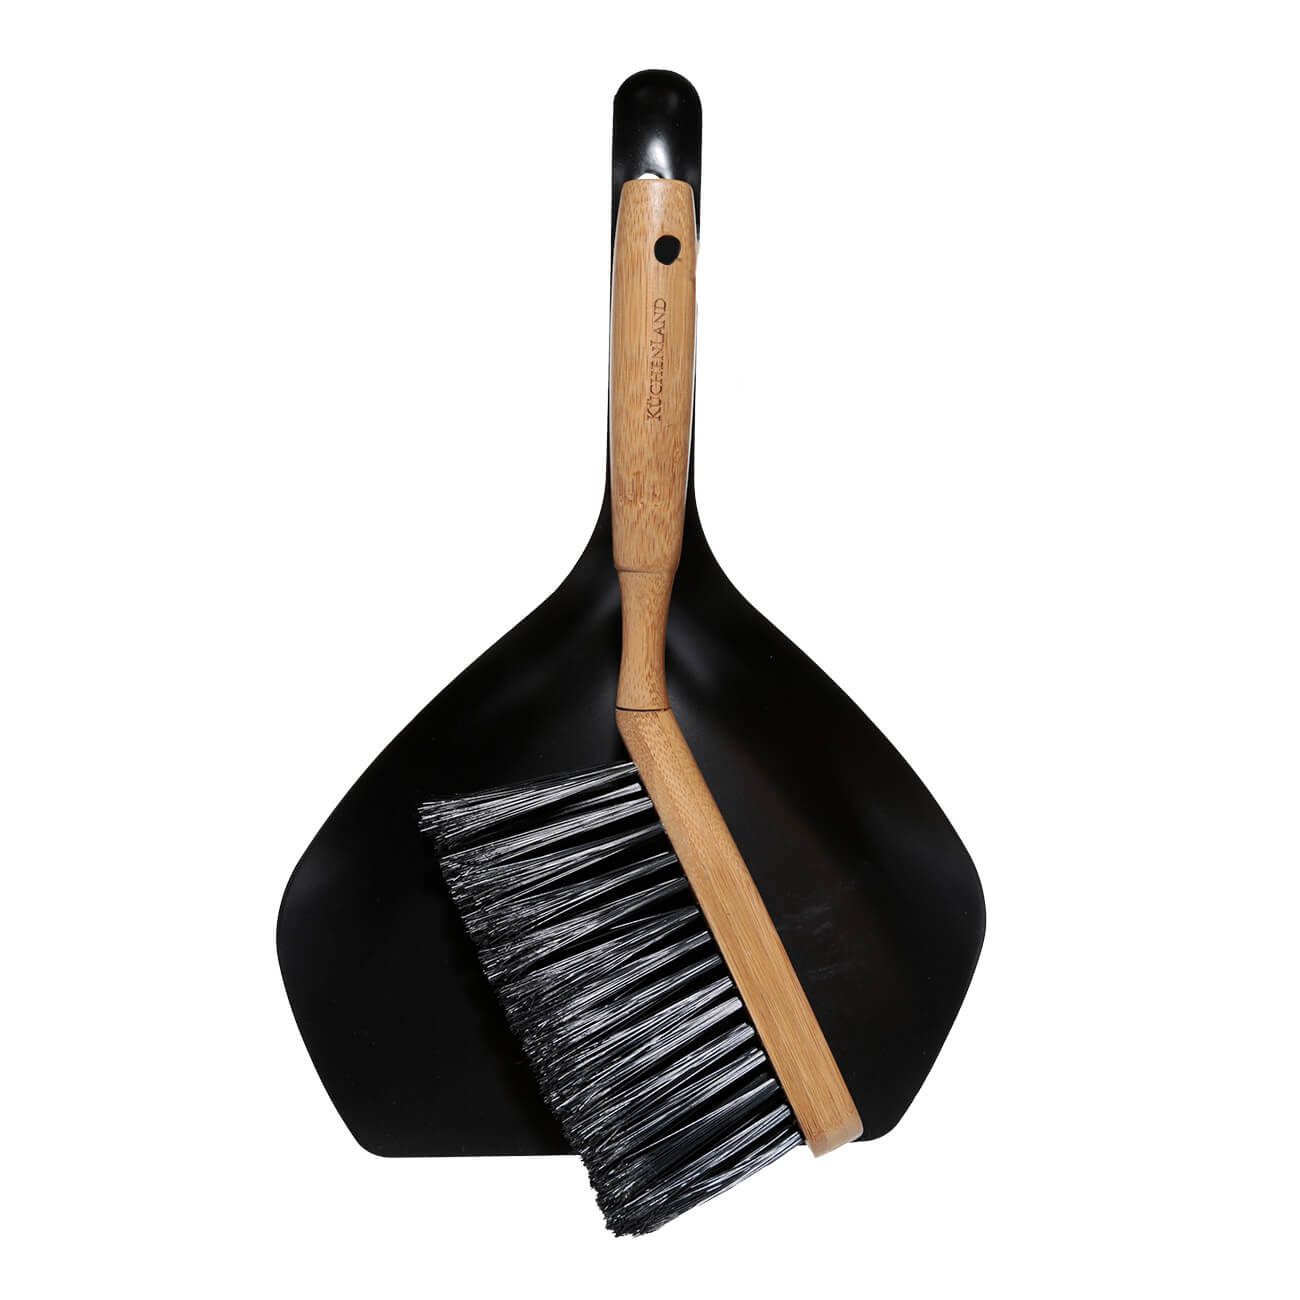 Щетка для мусора, с совком, 33 см, пластик/бамбук/сталь, черная, Black clean щетка зубная бамбук черная щетина eco life